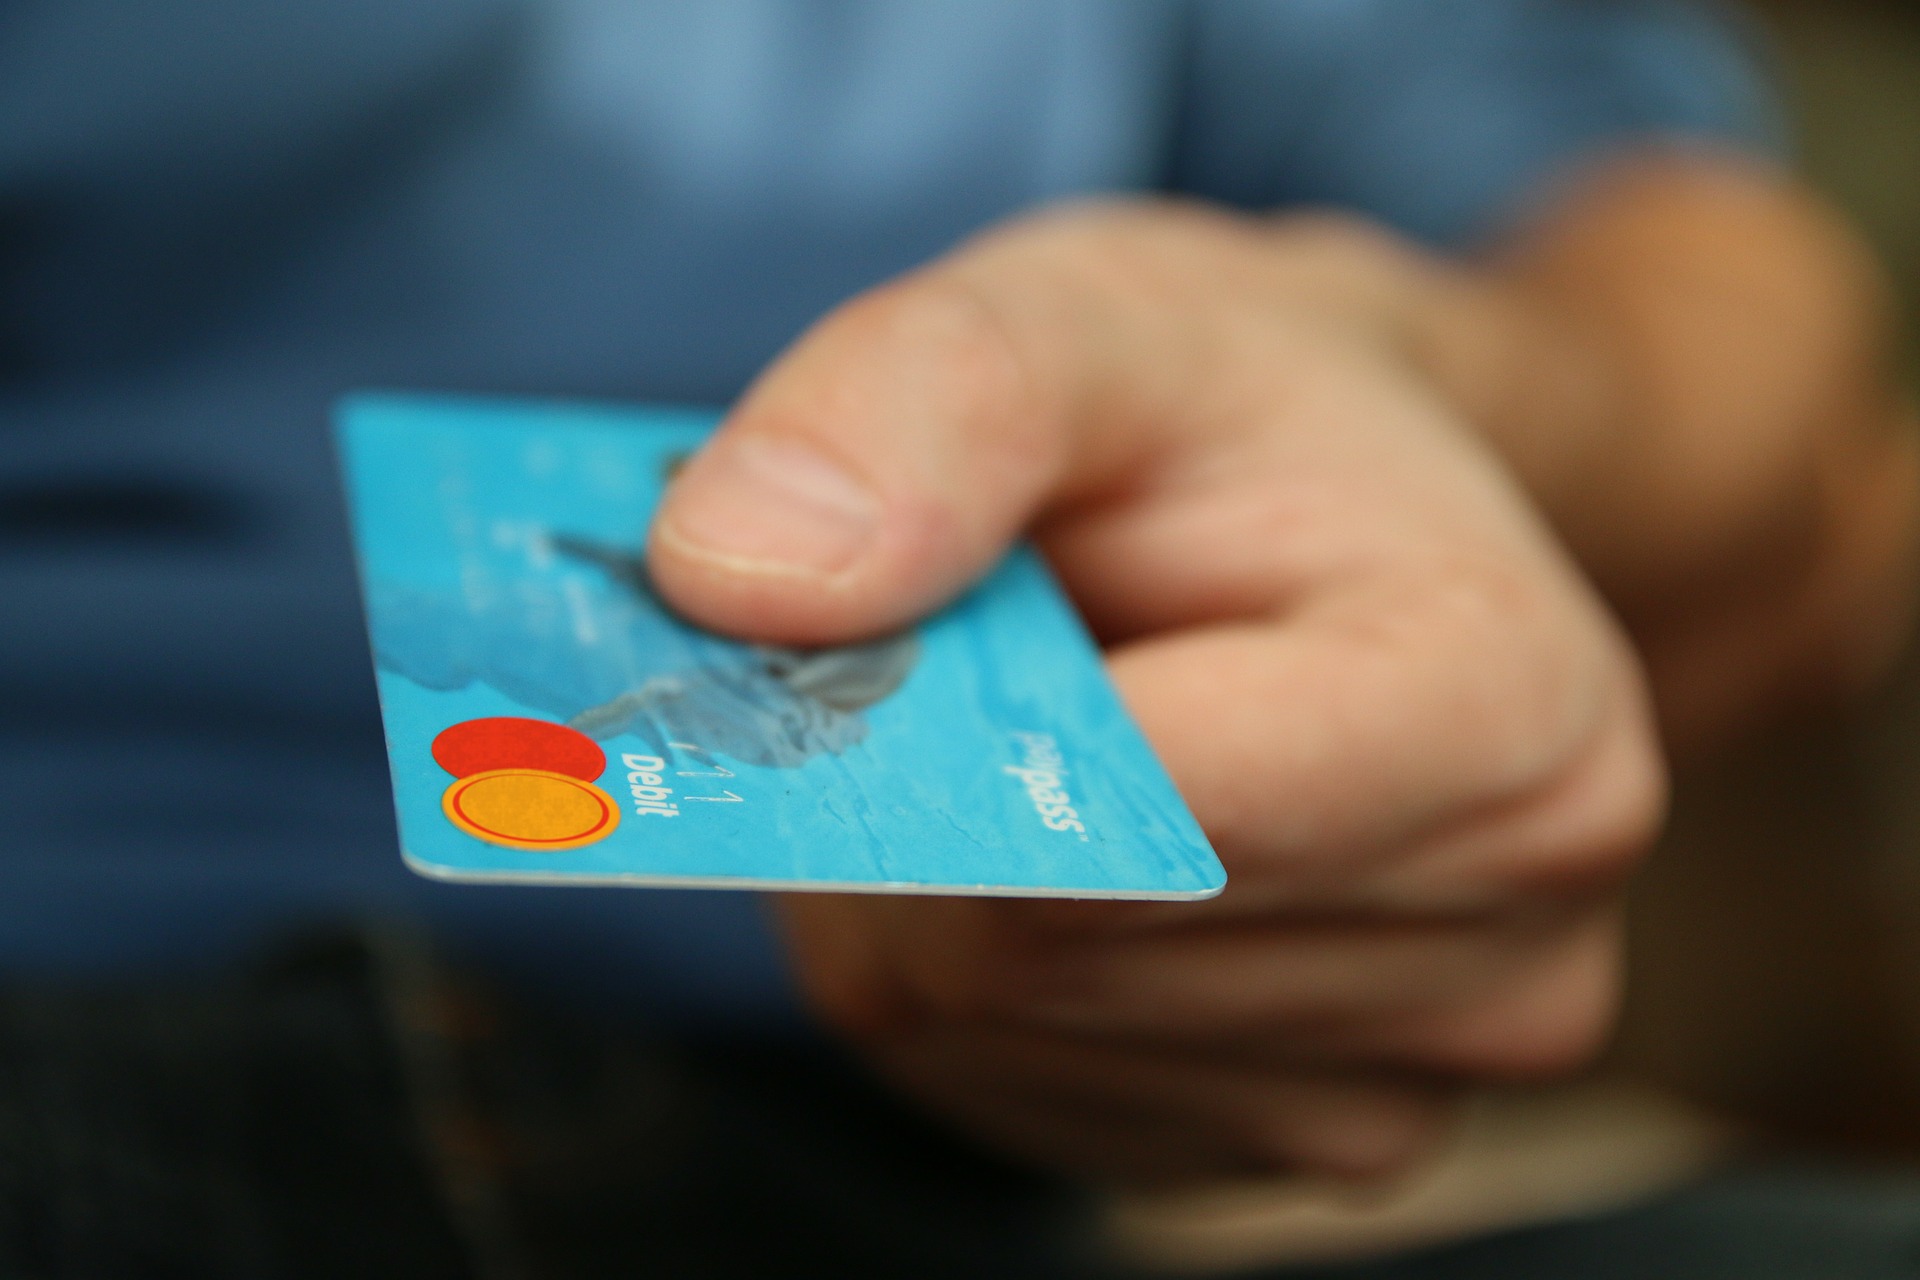 Μεσσηνία: Έκανε ανέπαφες συναλλαγές με κλεμμένες κάρτες